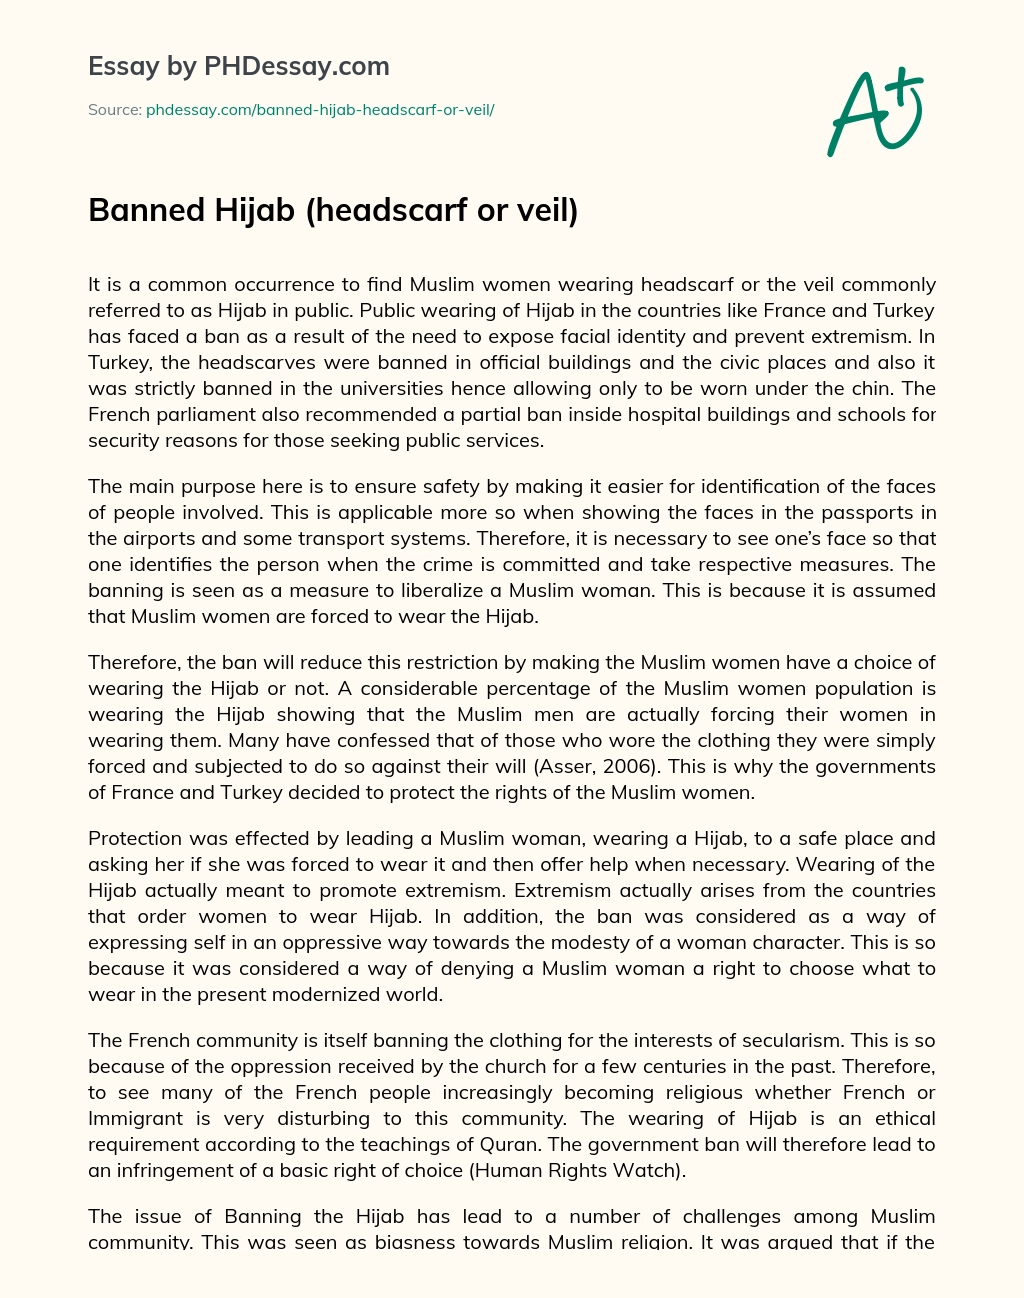 Banned Hijab (headscarf or veil) essay